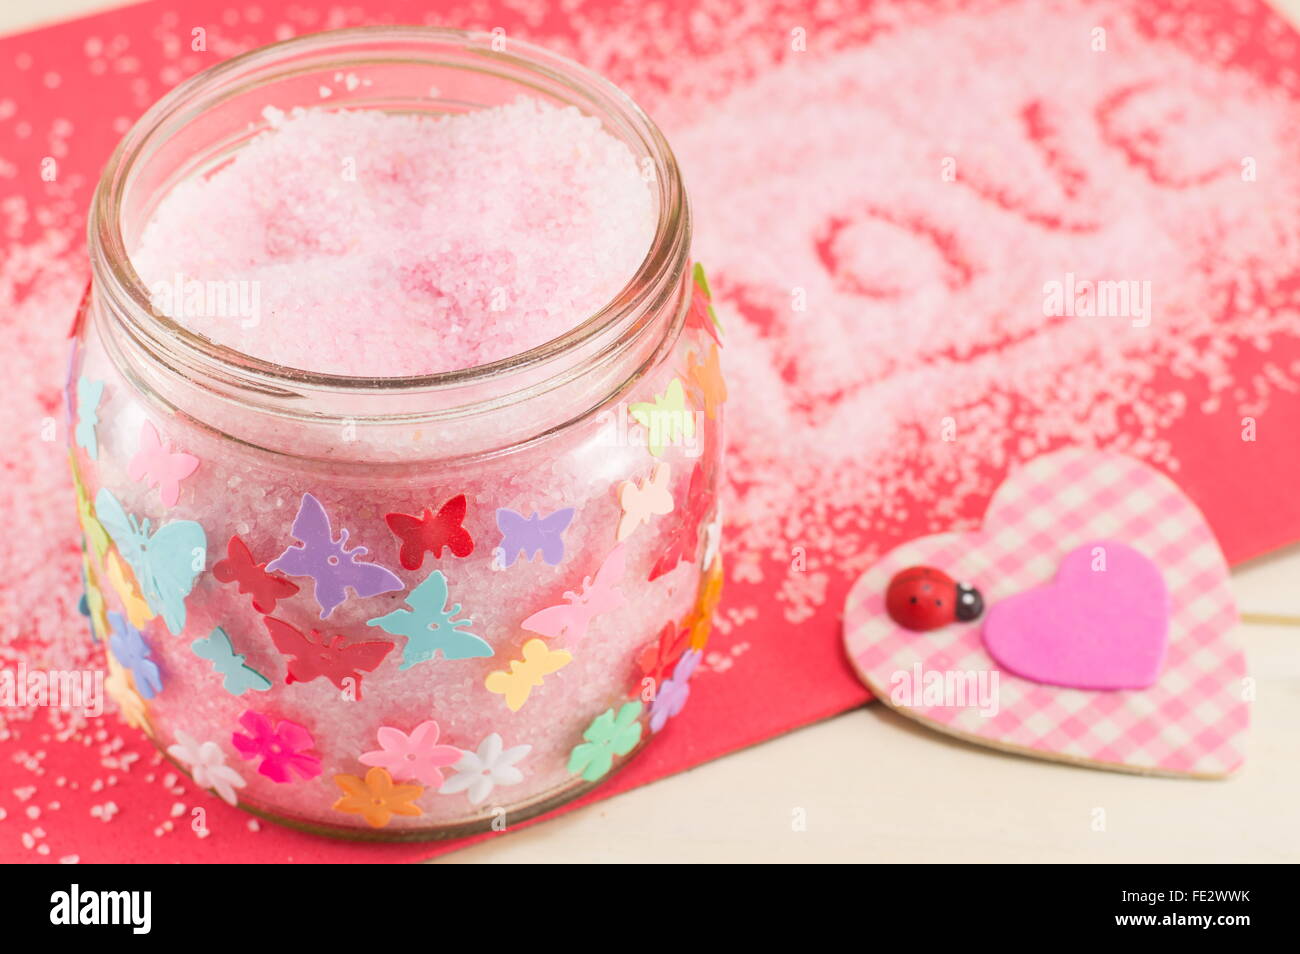 Badesalz in einem Glas neben einem rosa karierten Herz-symbol Stockfoto